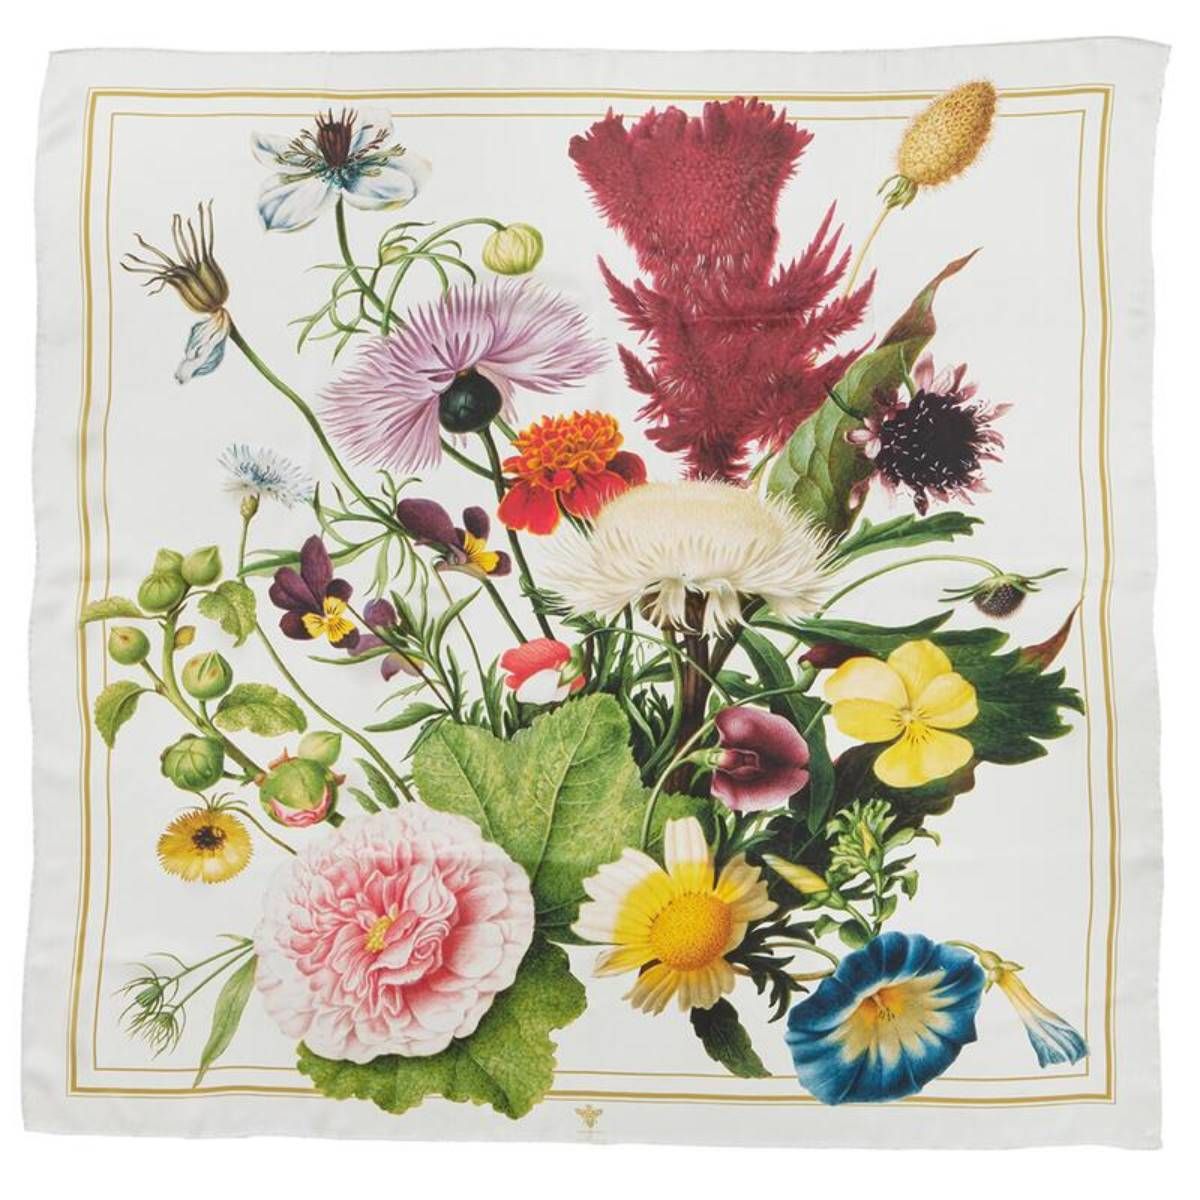 Silketørklæde med retro blomster i 100 % silke fra Koustrup & Co.